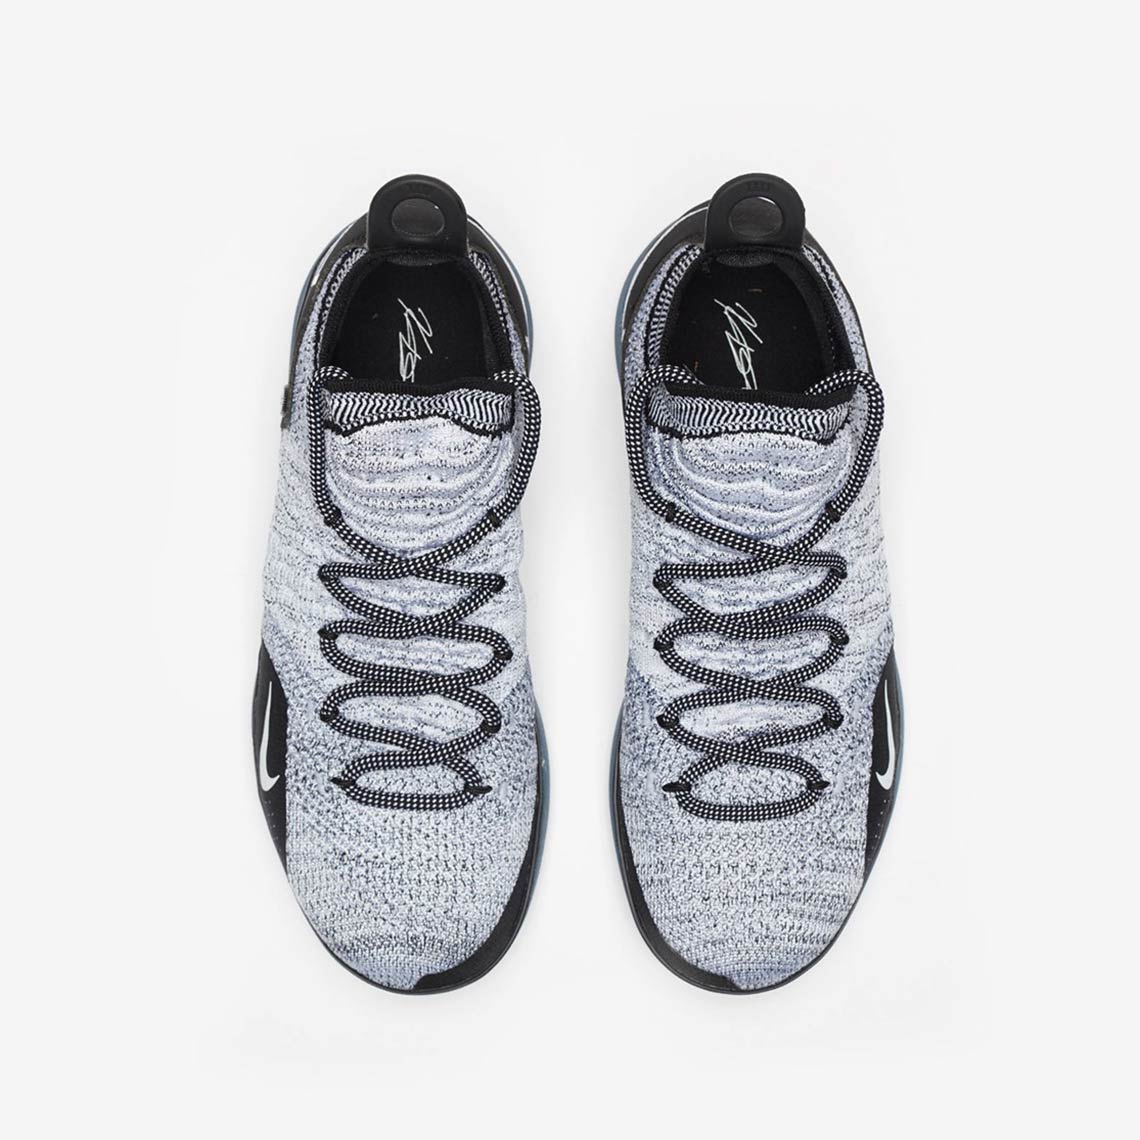 Nike KD 11 Just Do It AO2604-007 Release Date - Sneaker Bar Detroit